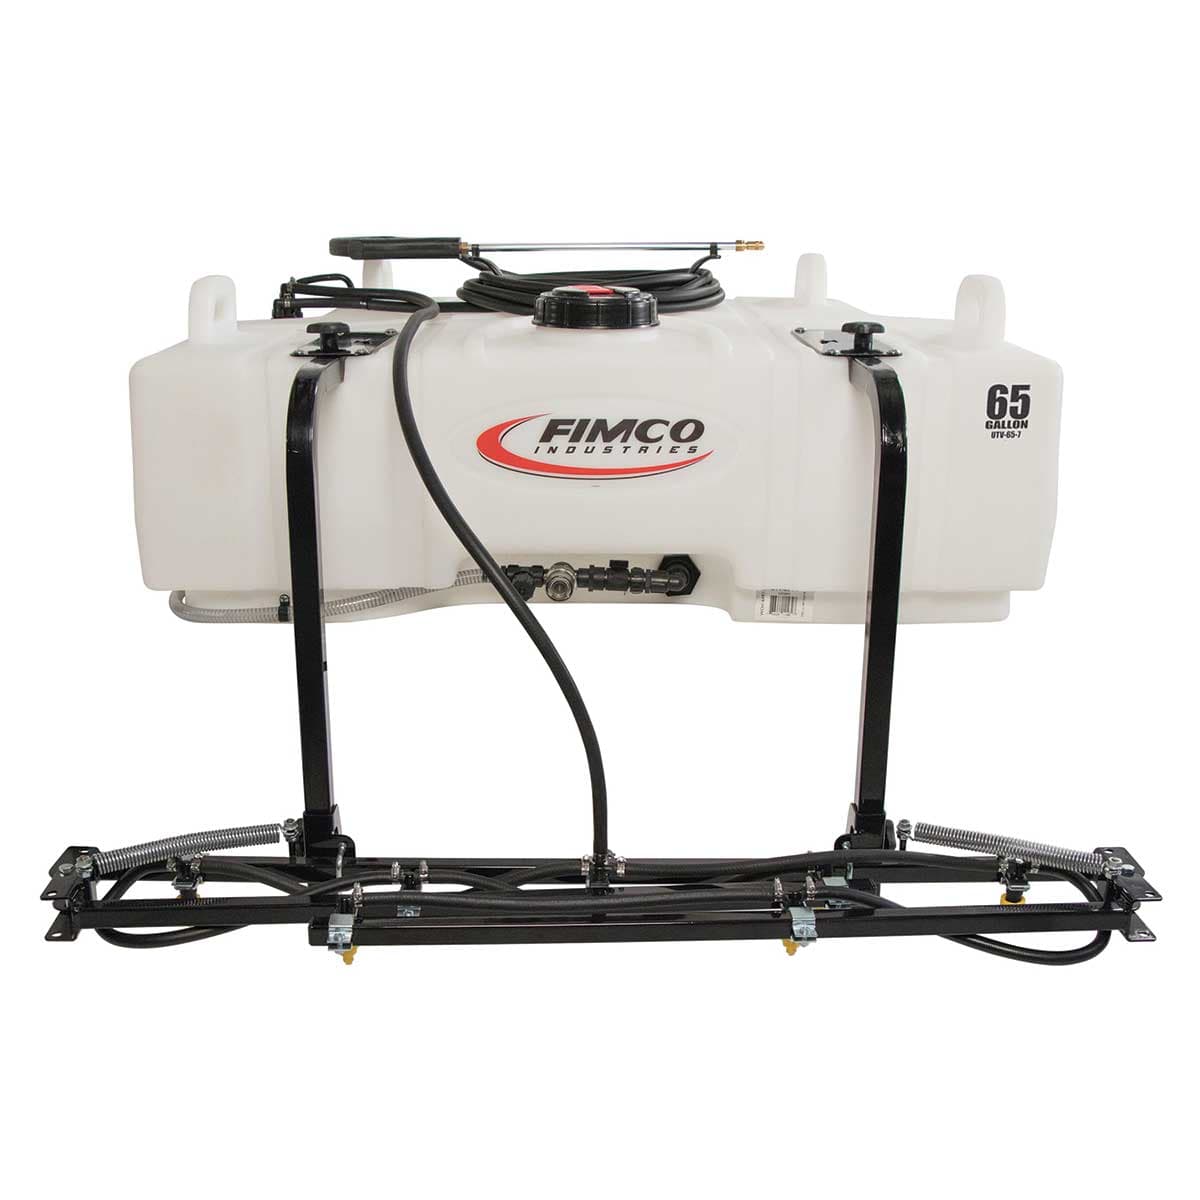 FIMCO 65 Gallon UTV Sprayer 4.5 GPM 7 Nozzle